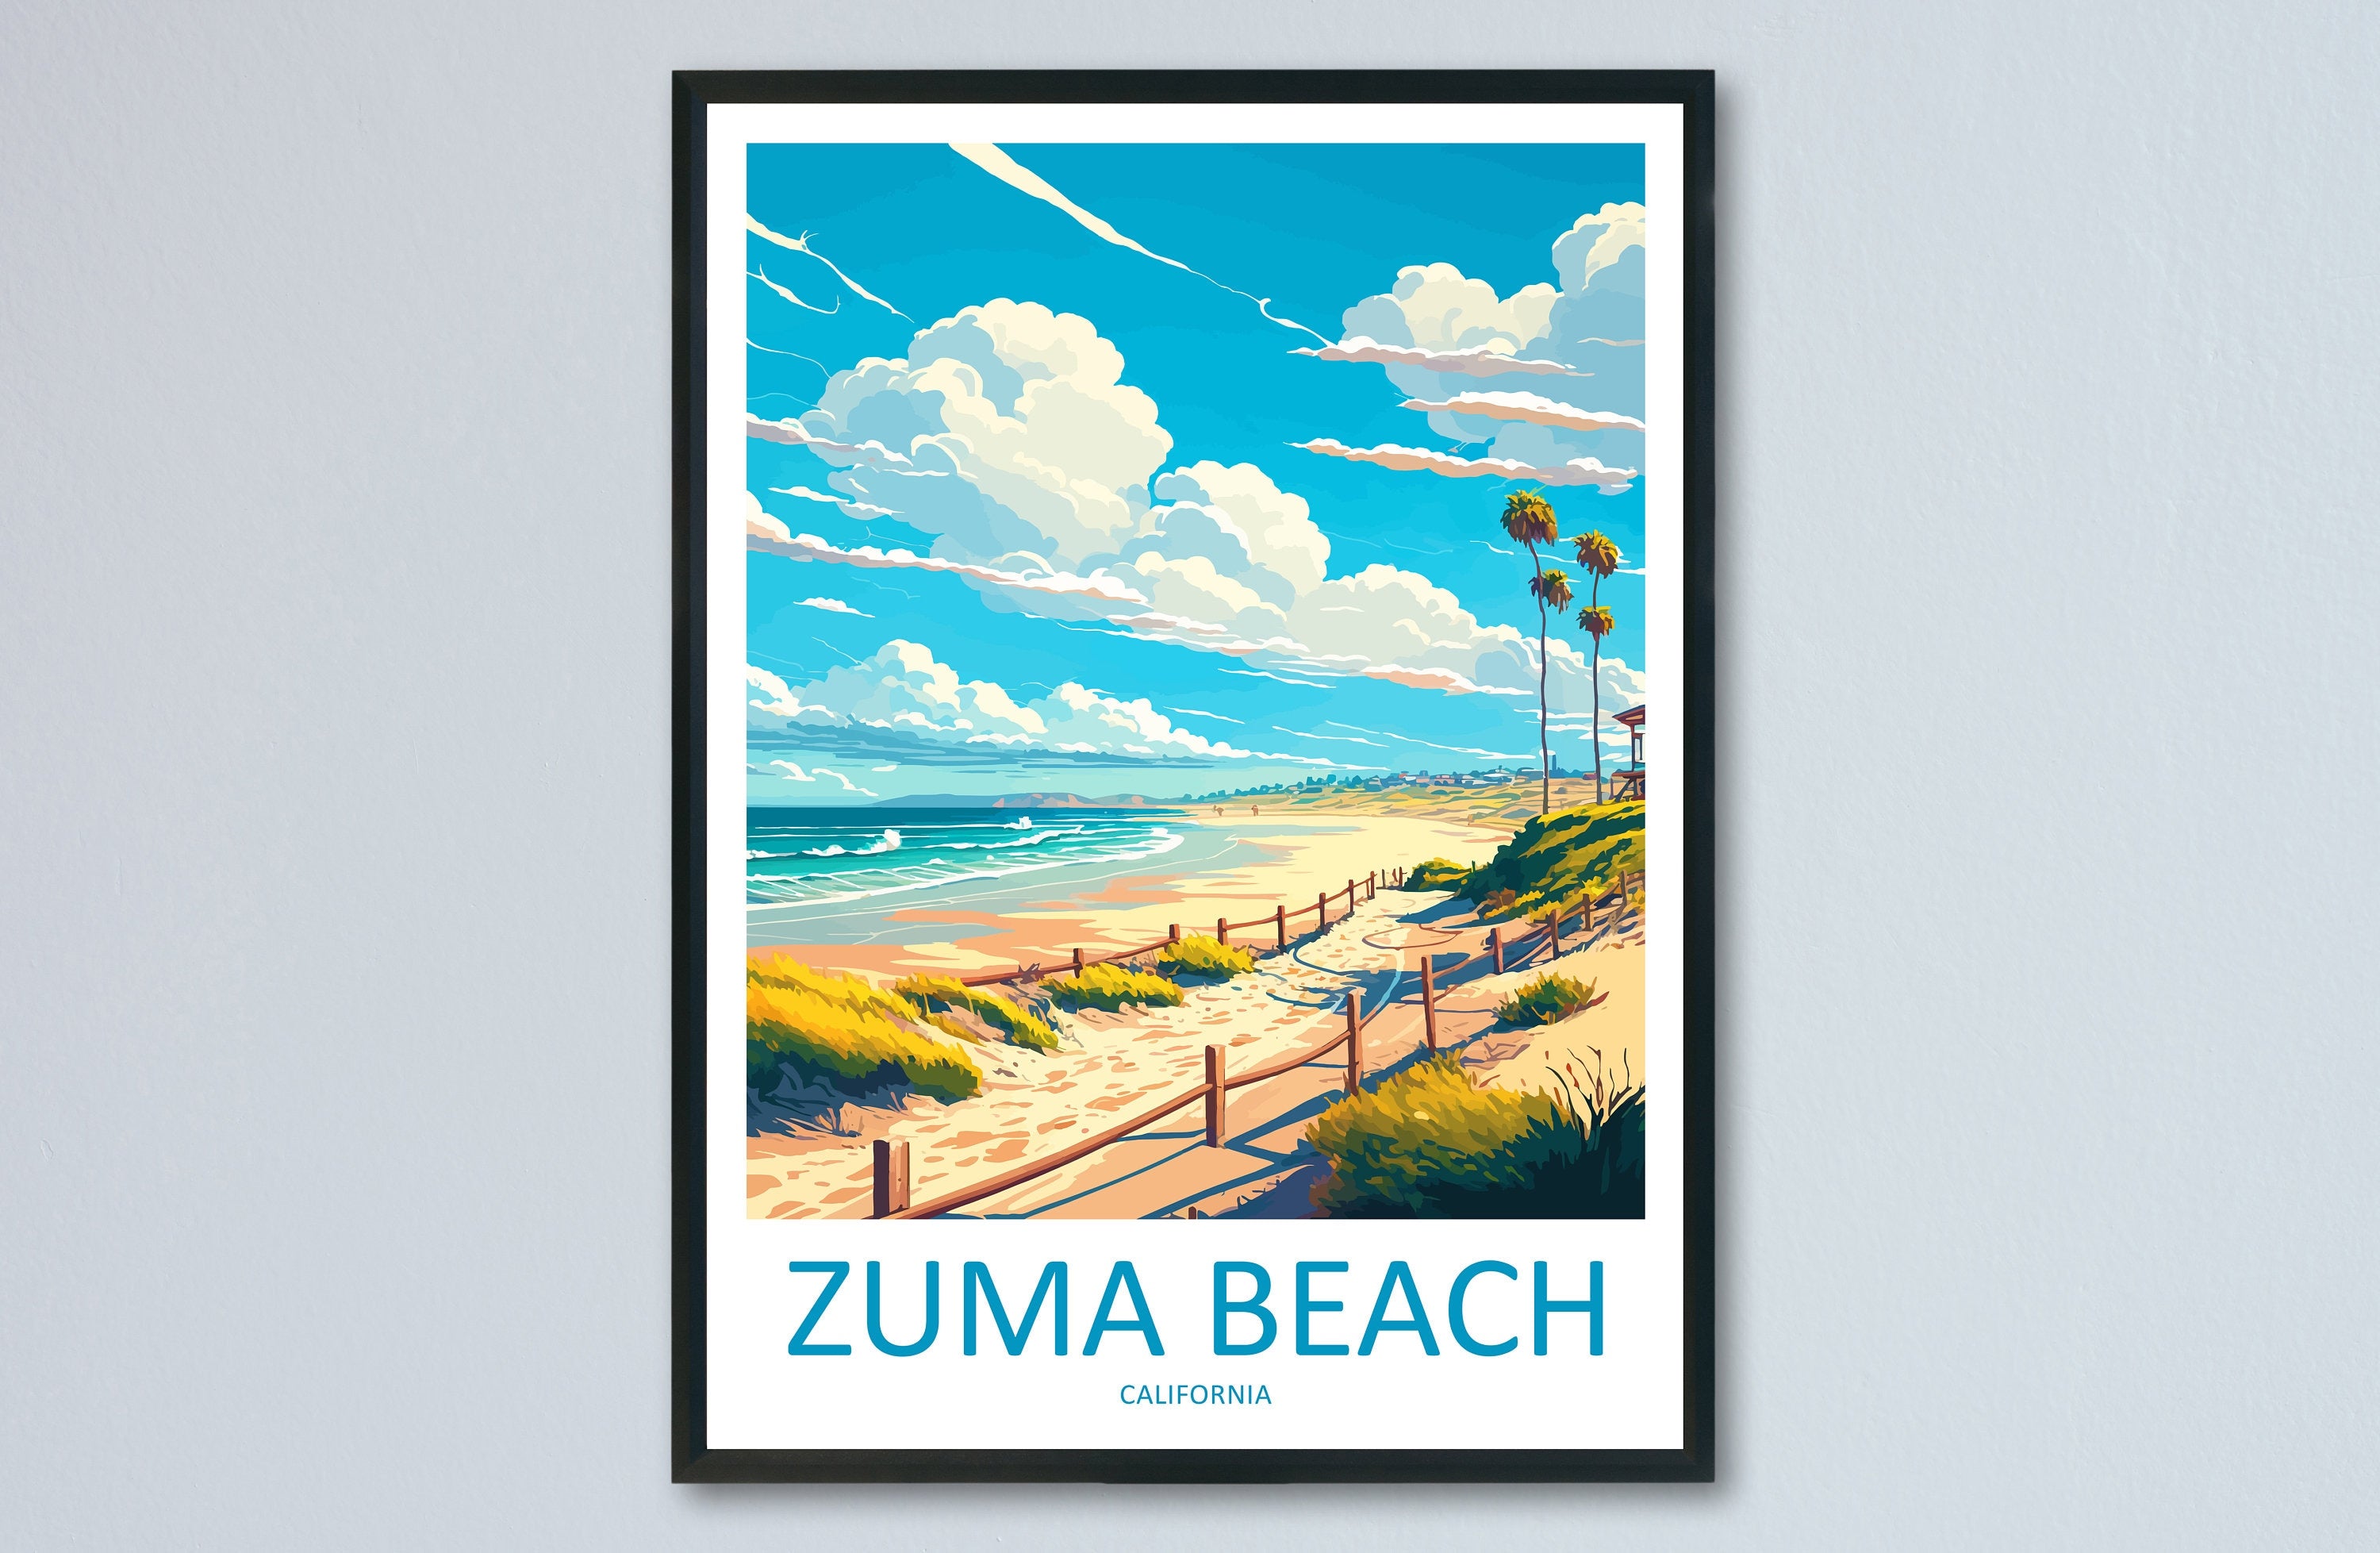 Zuma Beach Travel Print Wall Art Zuma Beach Wall Hanging Home Décor Zuma Beach Gift Art Lovers California Art Lover Gift Zuma Beach